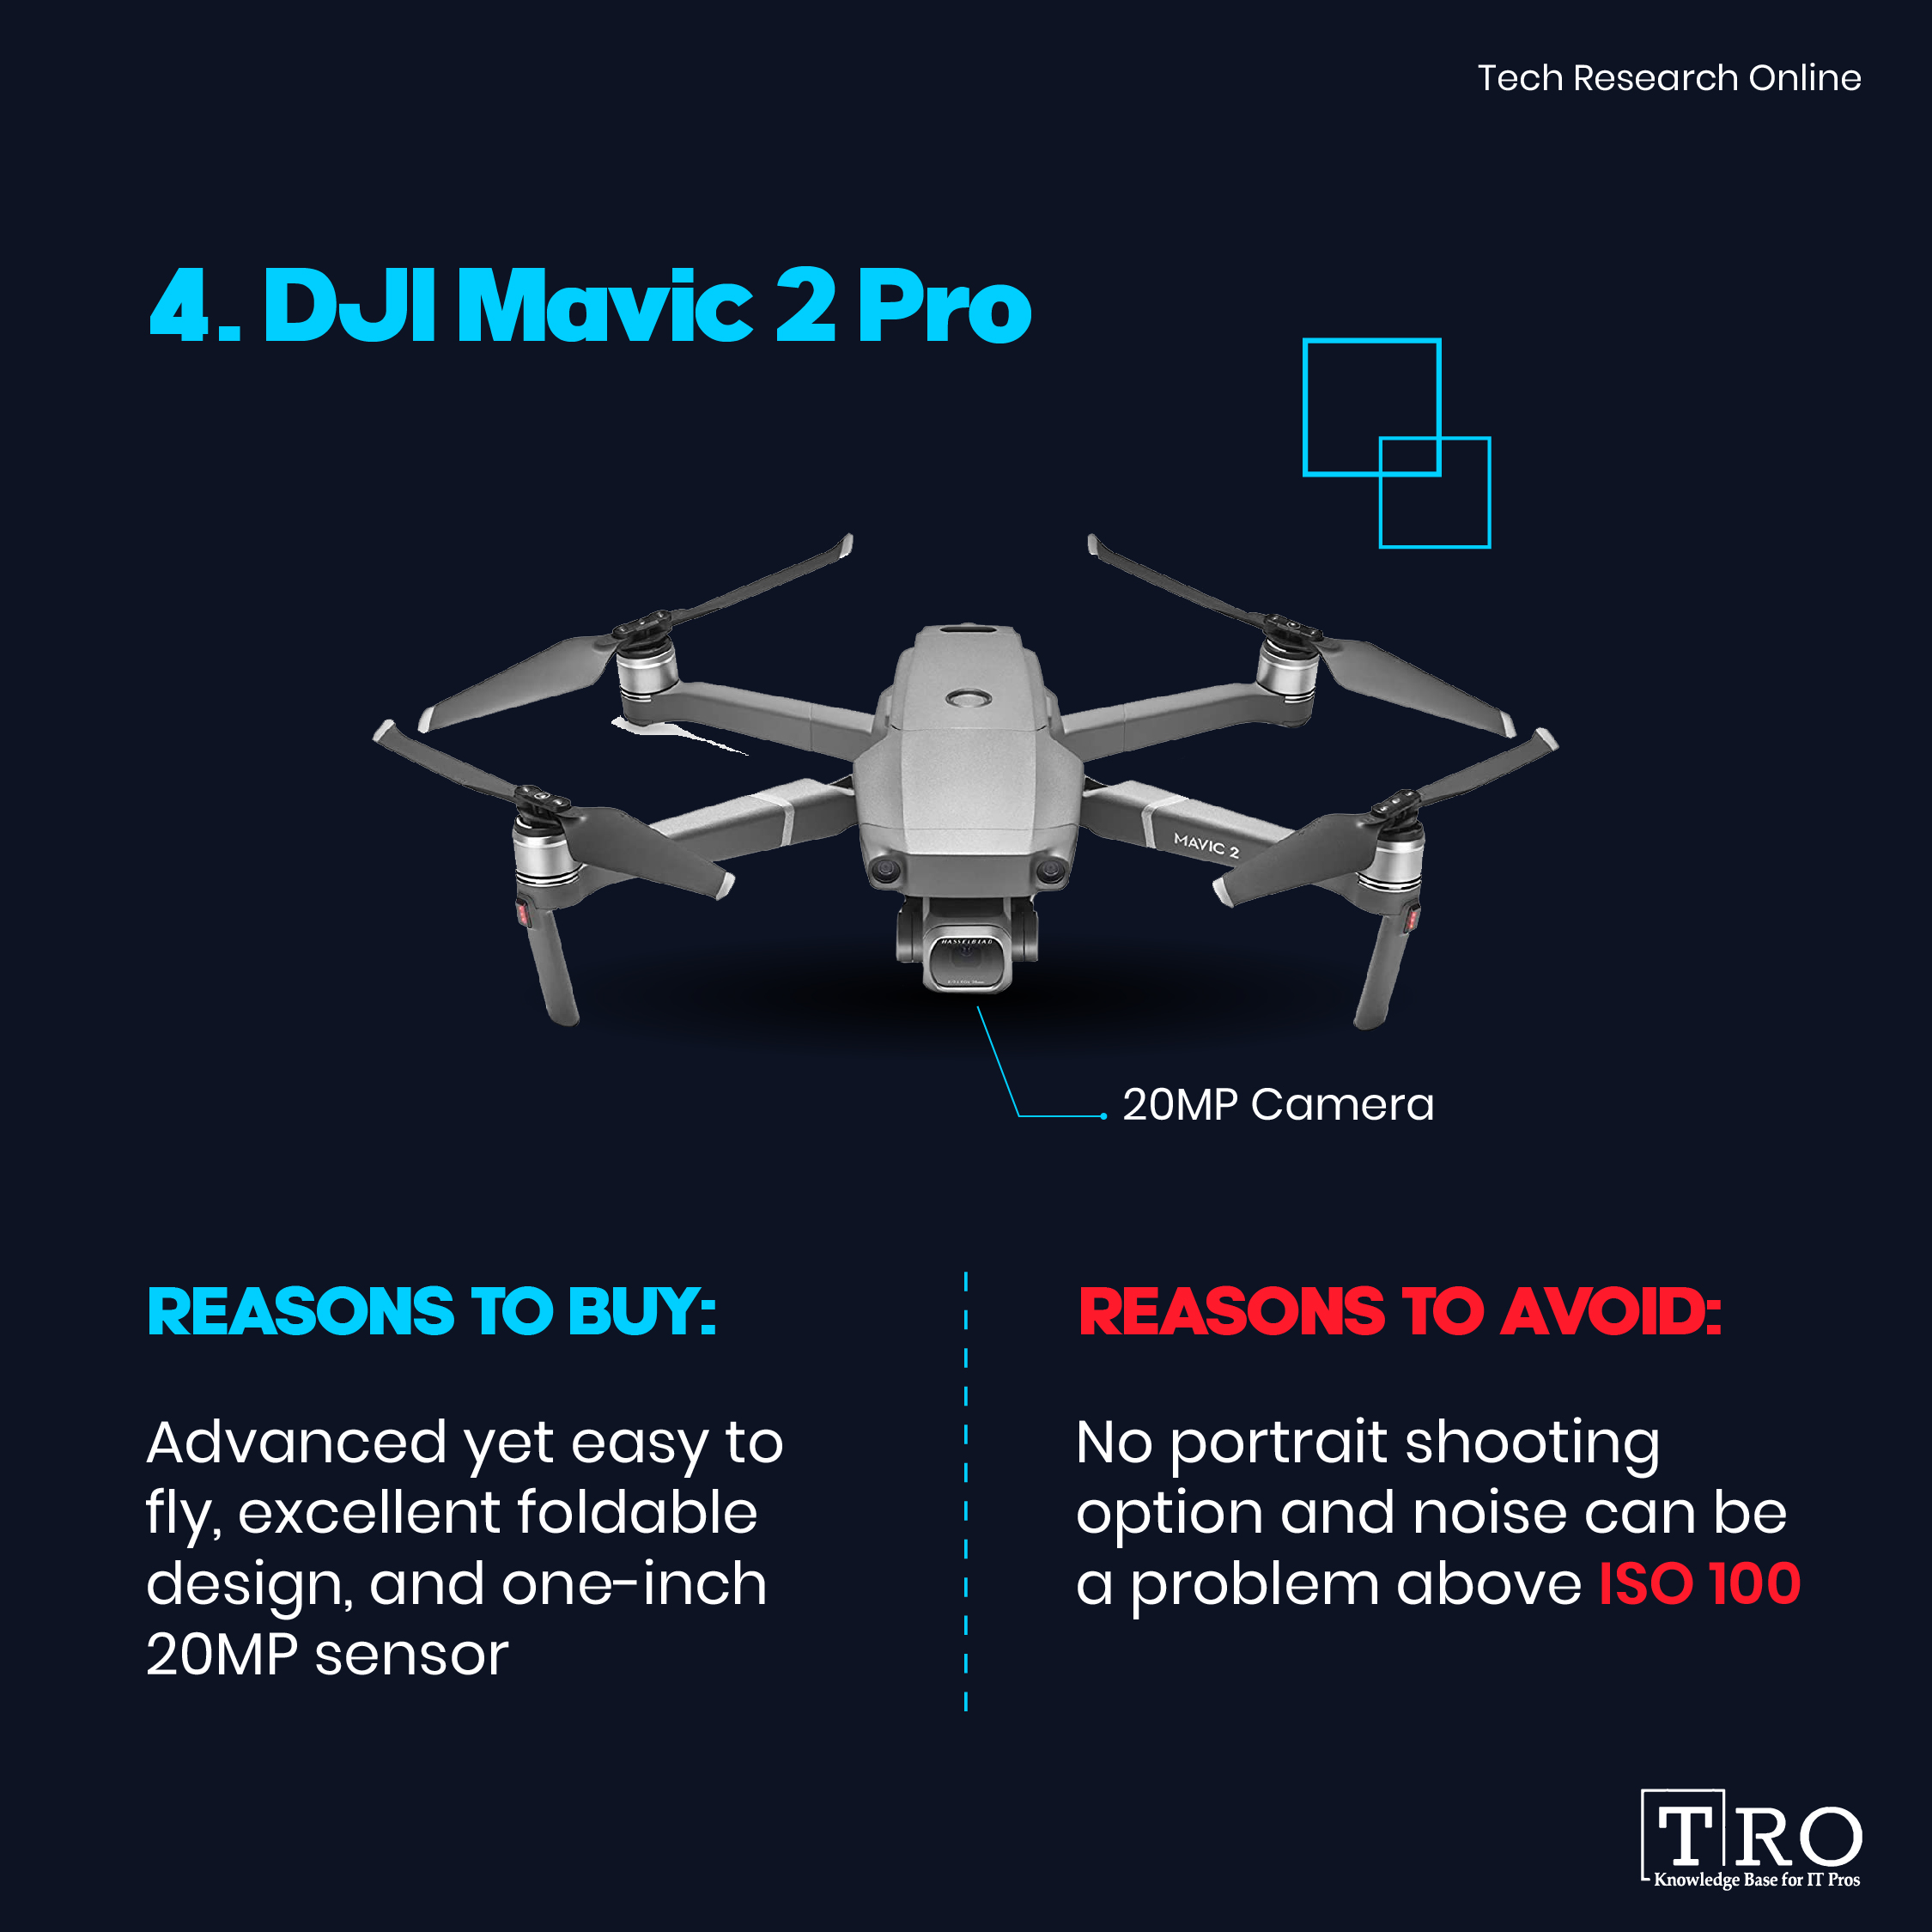 DJI Mavic 2 Pro flying drone